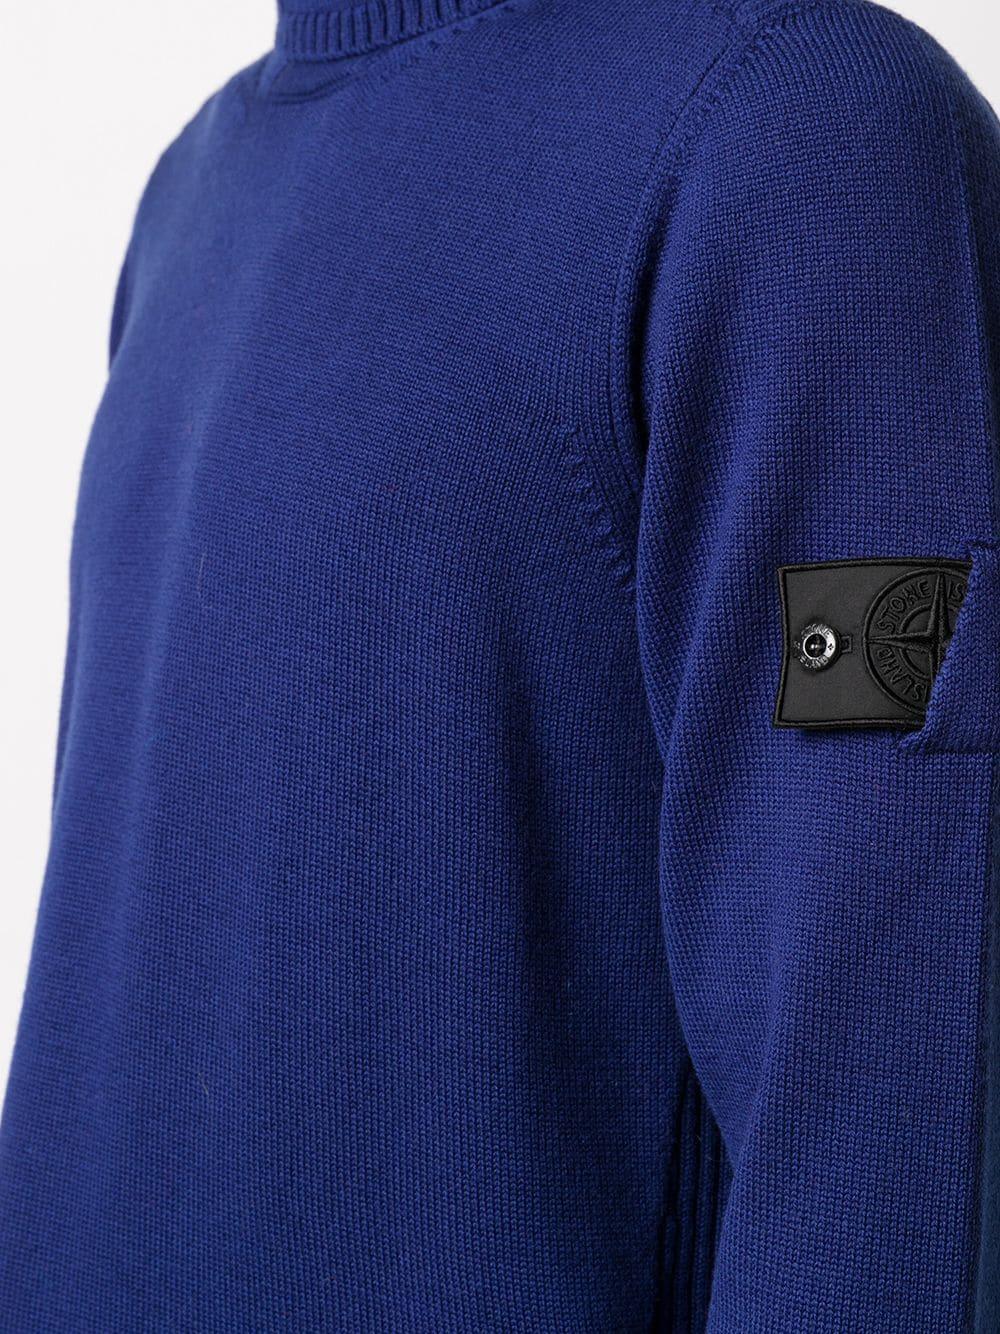 Stone Island Shadow Project Wolle Rollkragenpullover mit Logo-Patch in Blau  für Herren - Lyst